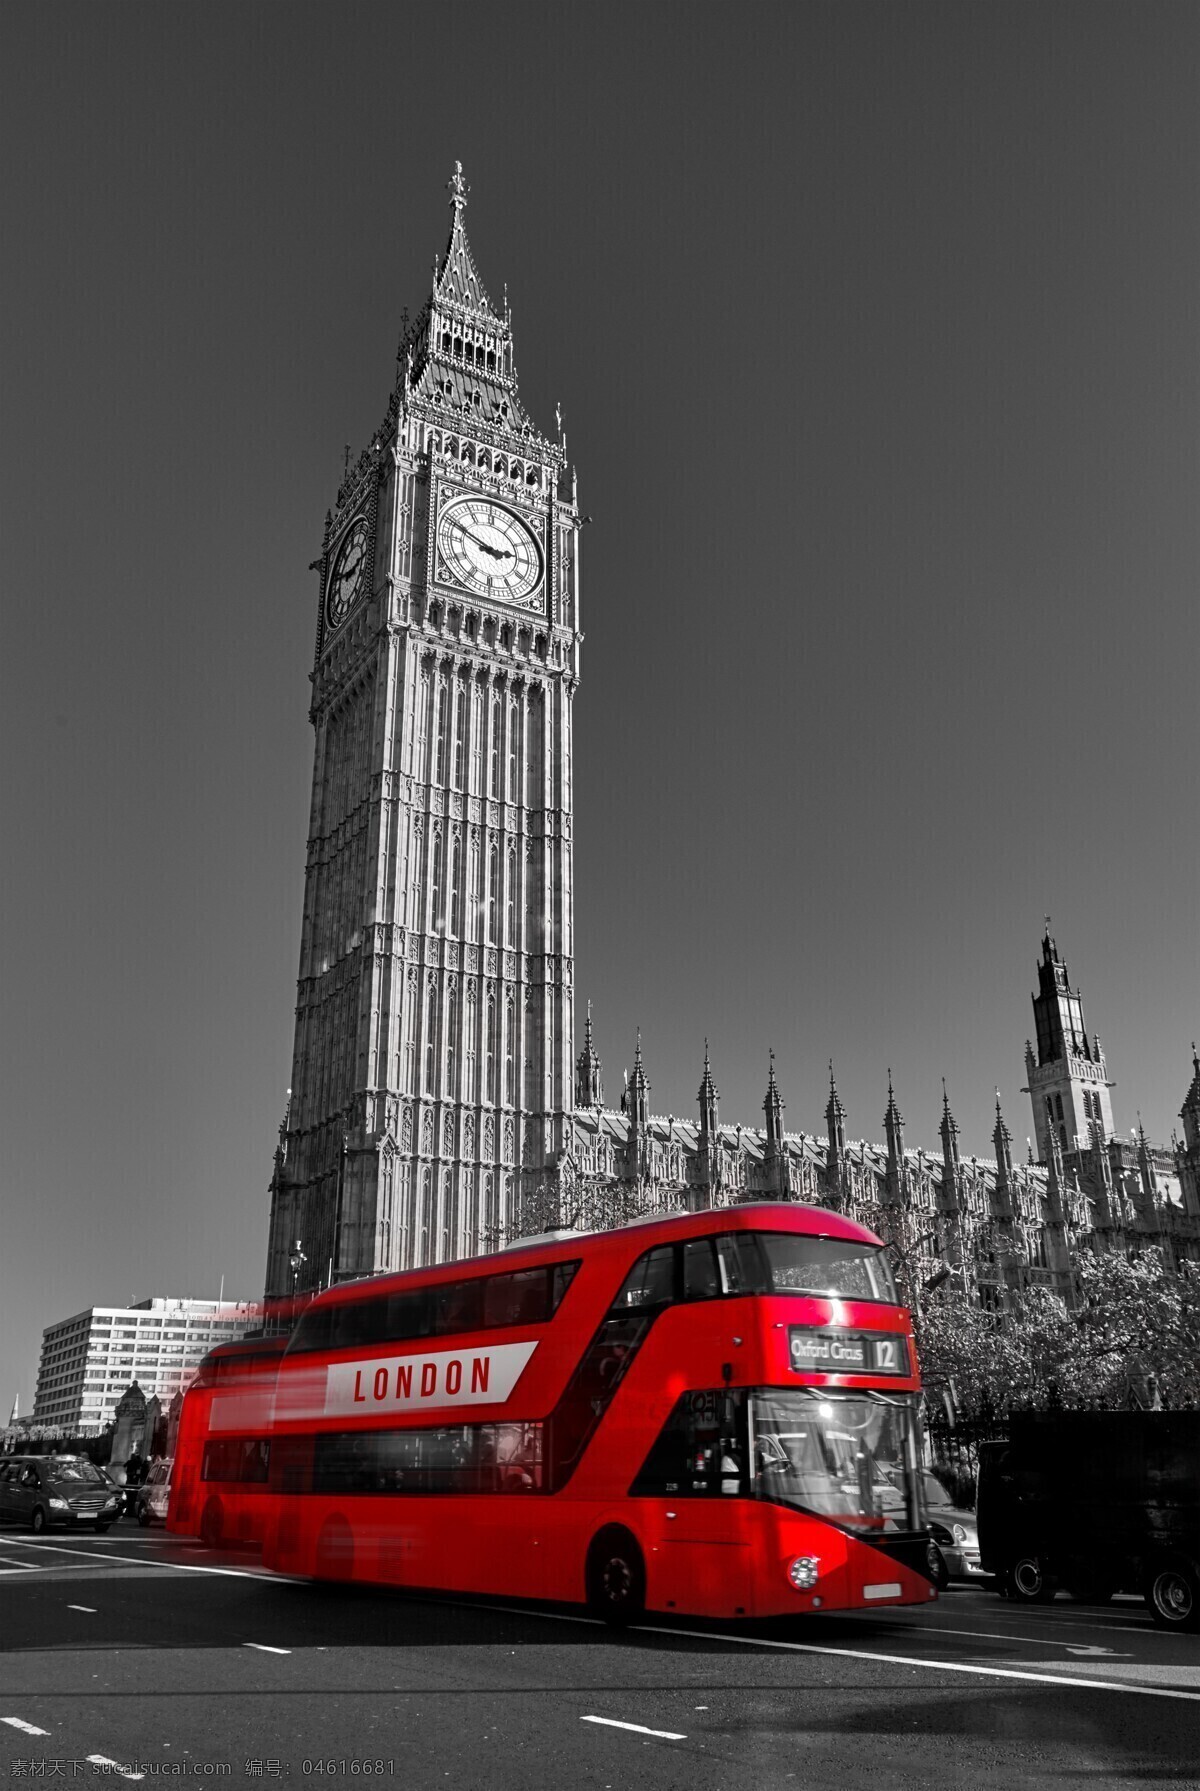 英国伦敦图片 天空 伦敦桥 建筑 汽车 欧式建筑 城堡 大本钟 英国伦敦 旅游摄影